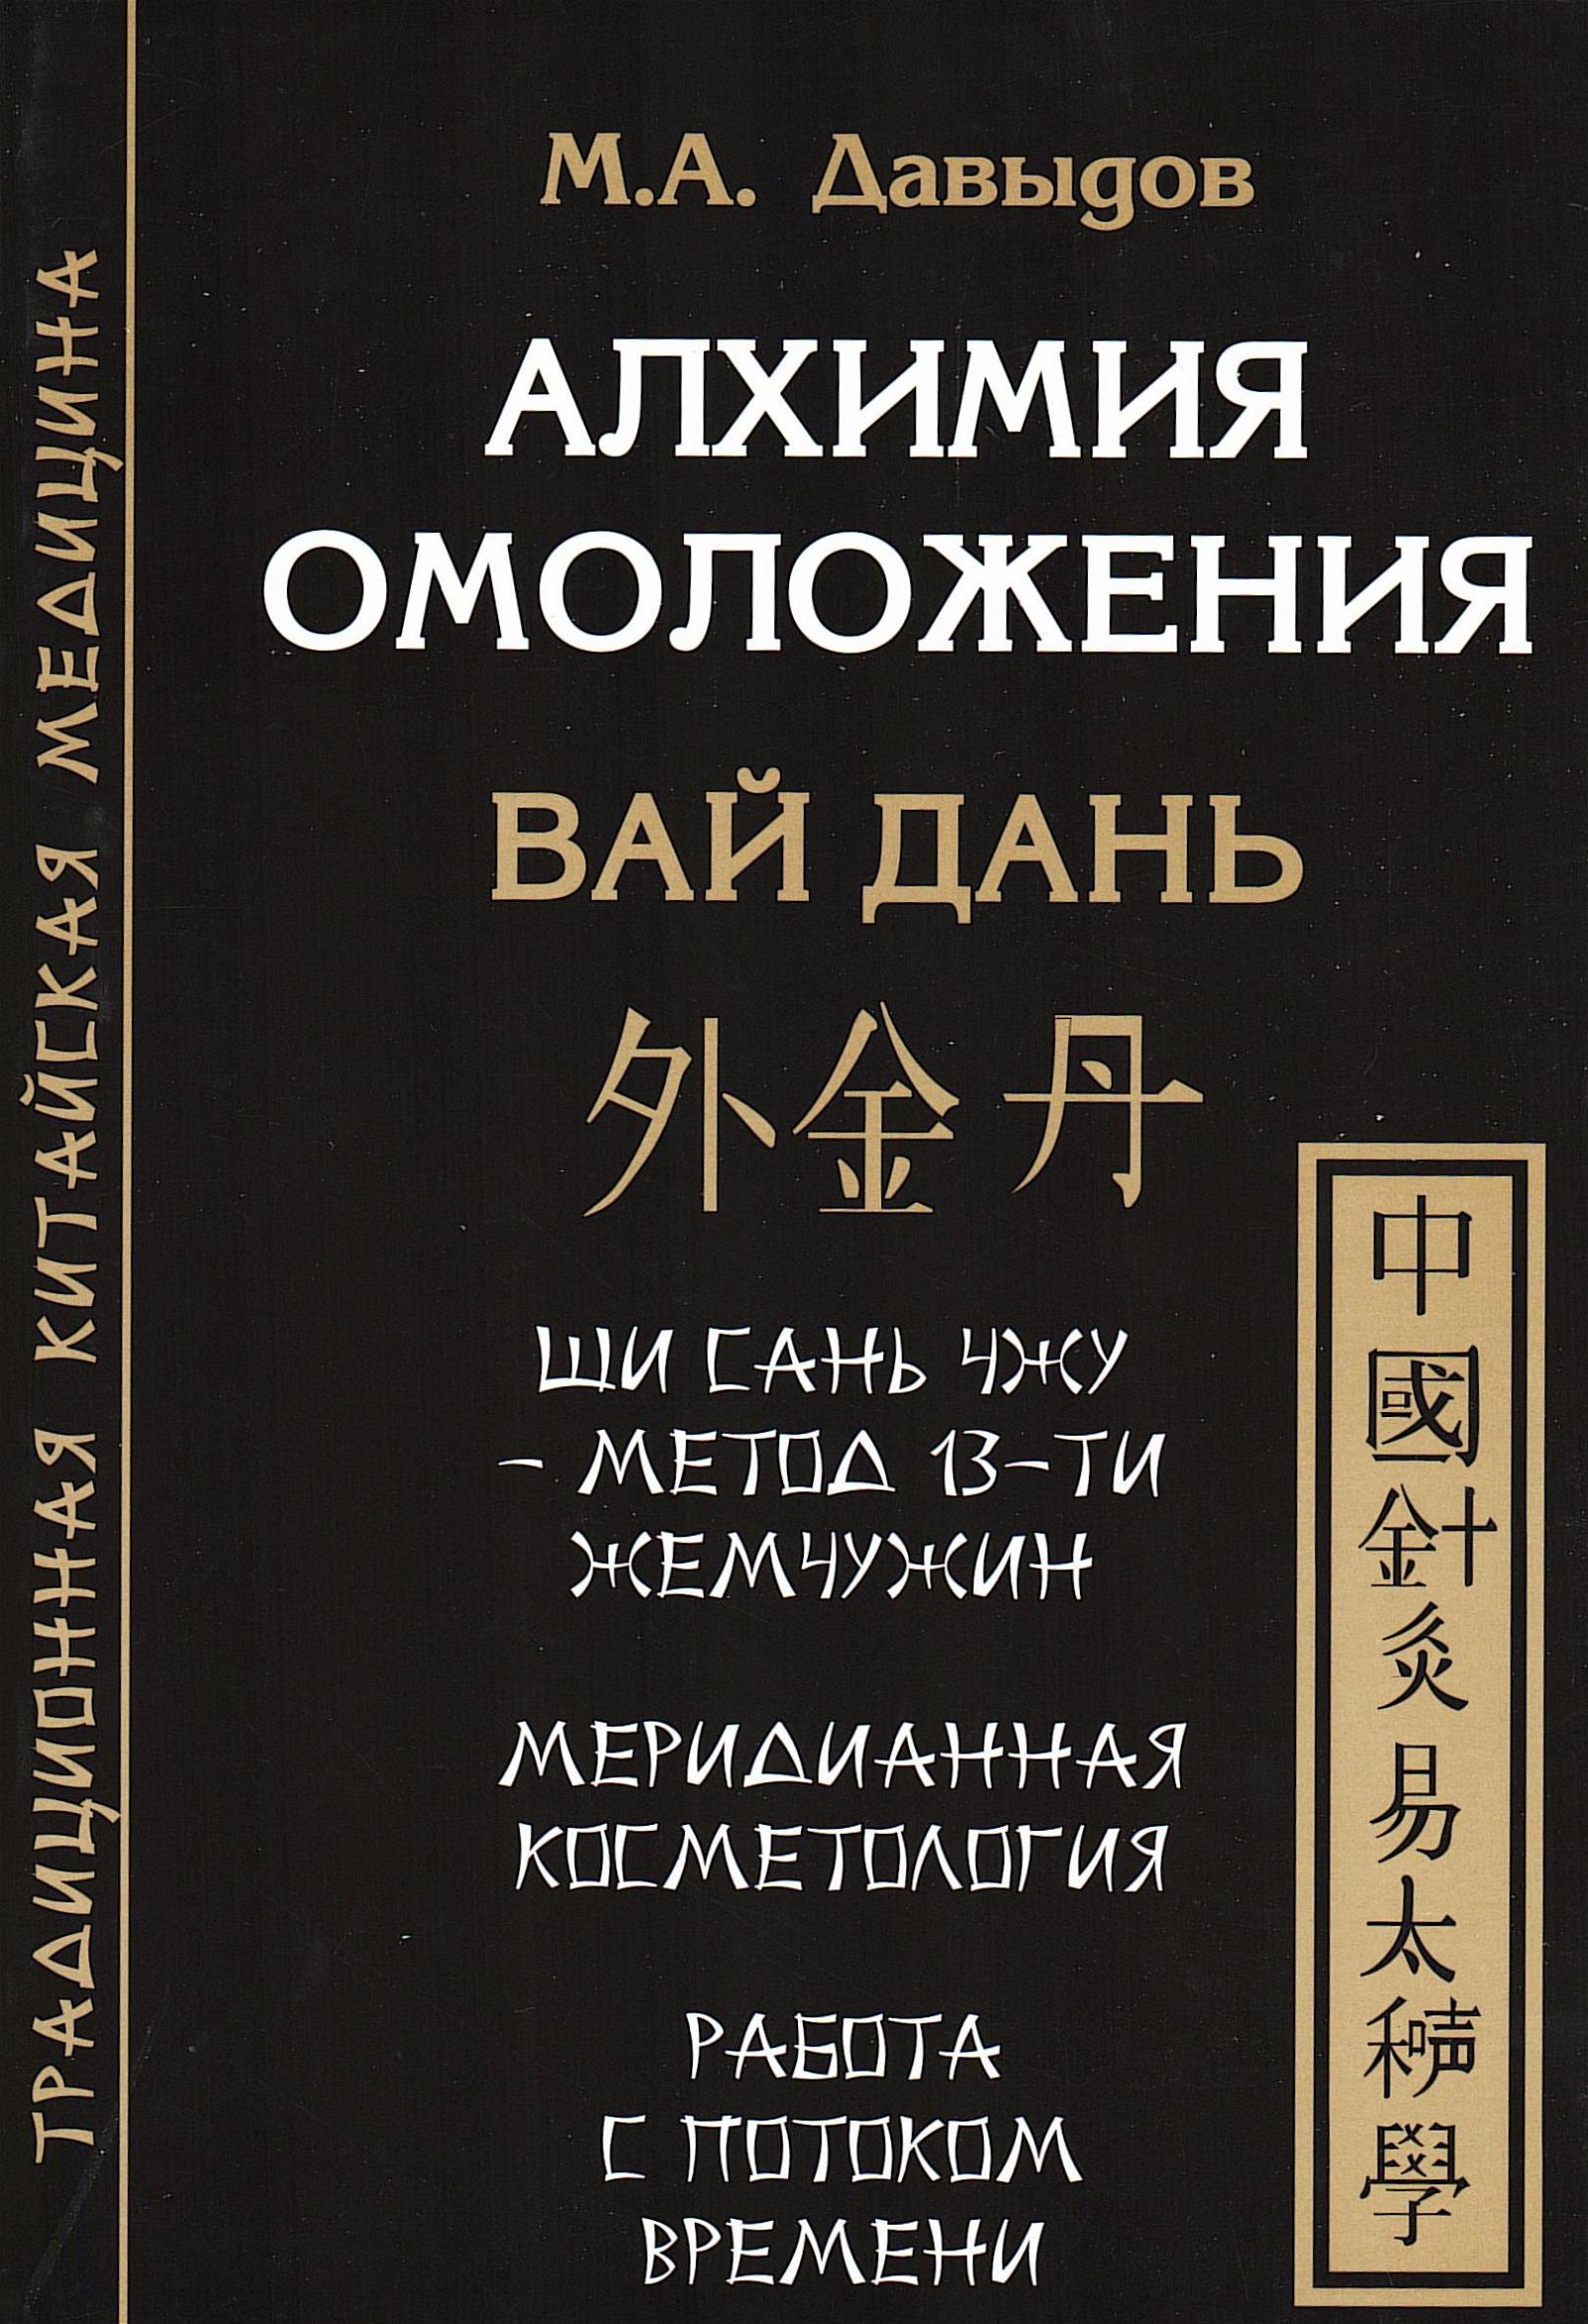 Купить книгу Алхимия омоложения. Вай Дань Давыдов М. А. в интернет-магазине Ариаварта